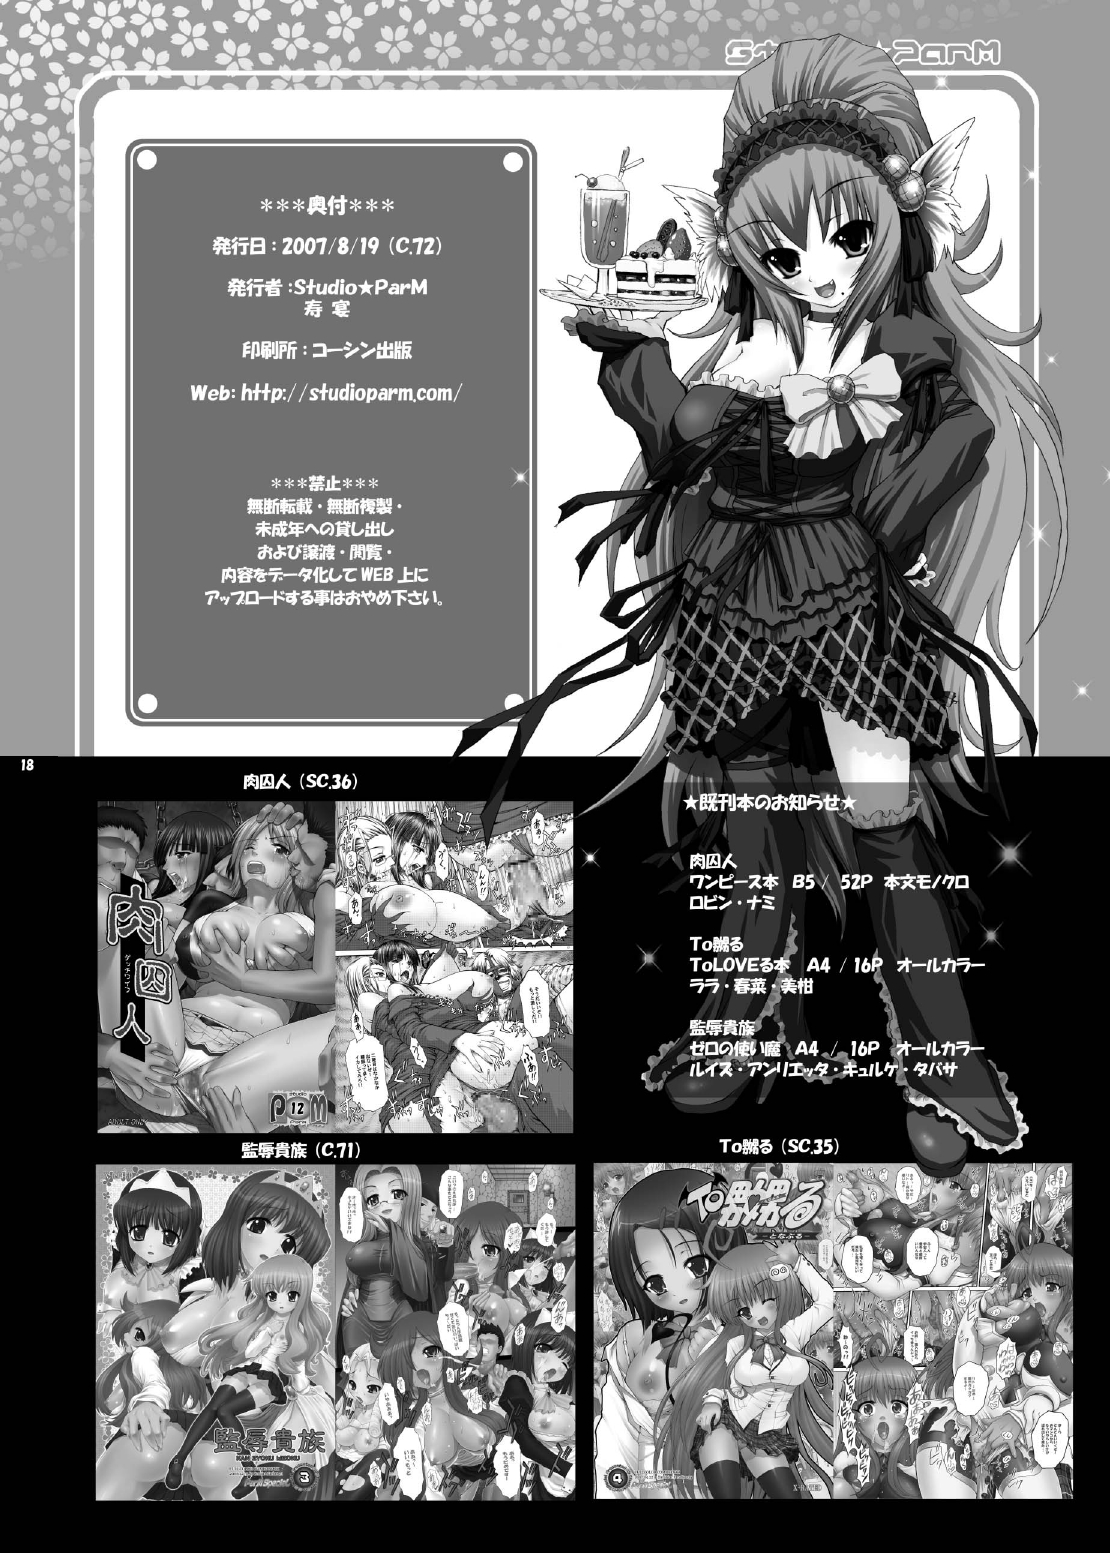 (C72) [Studio ParM (Kotobuki Utage)] PM 13 - Koku no Inran Shimai (Tengen Toppa Gurren Lagann) page 18 full